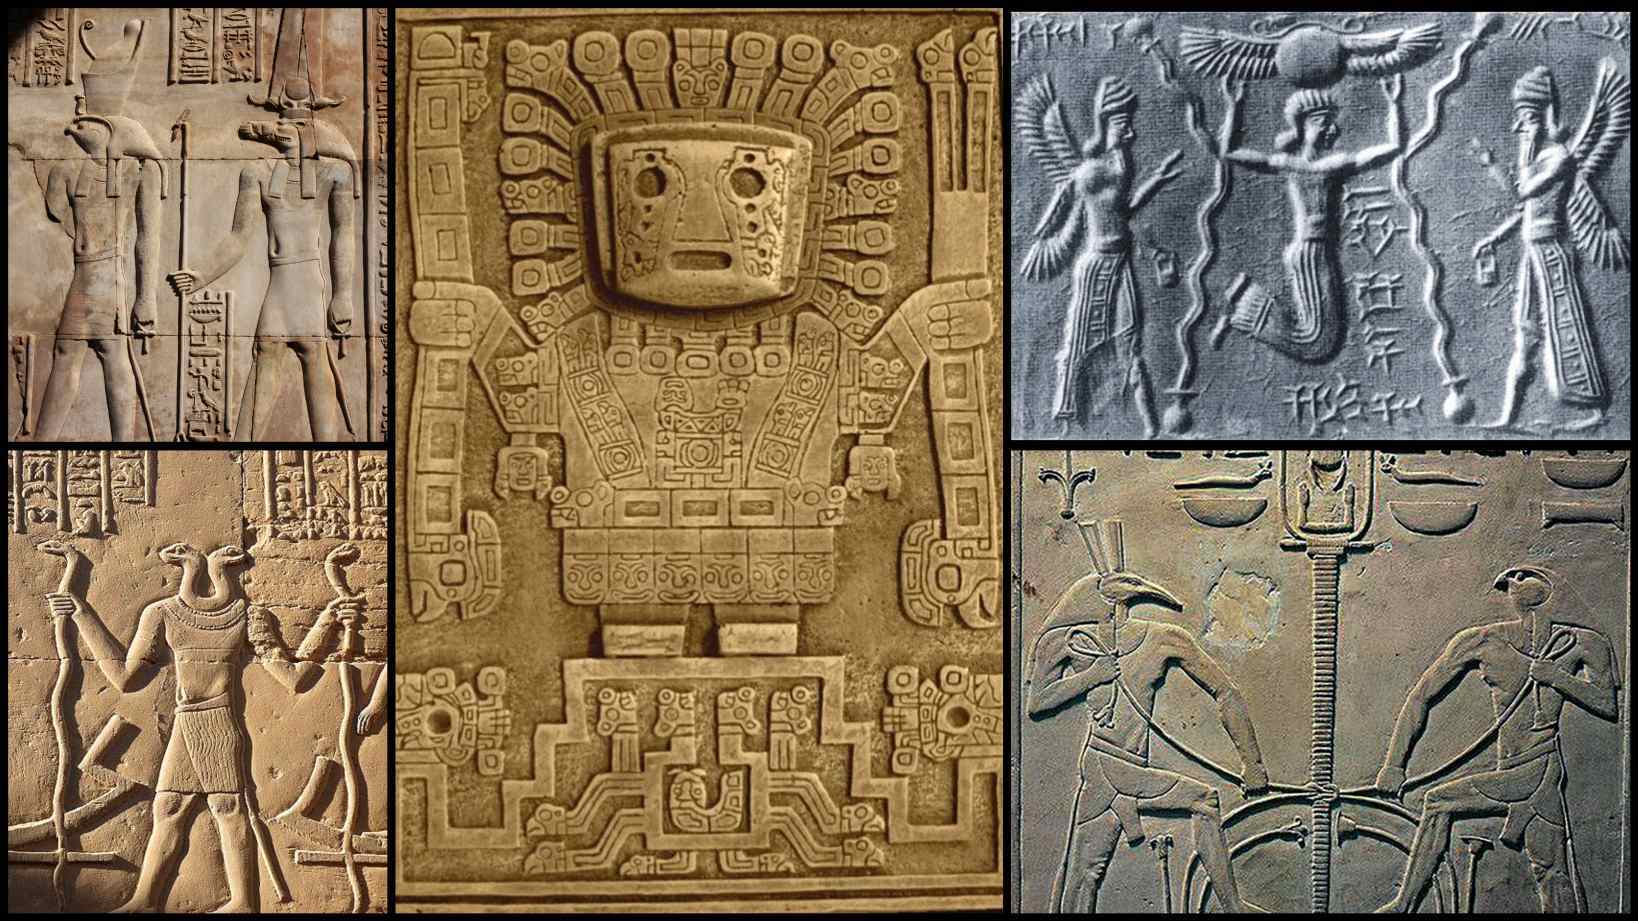 Spisy z roku 947 nl od Abu al-Hasana Ali al-Mas'udi popisují arabské legendy, podle nichž Egypťané stavěli pyramidy levitací. Pod těžké kameny byl položen „magický papyrus“, poté byly stany zasaženy rad kovem. Potom se kameny vznášely po stezce lemované stejnými tajemnými kovovými tyčemi.